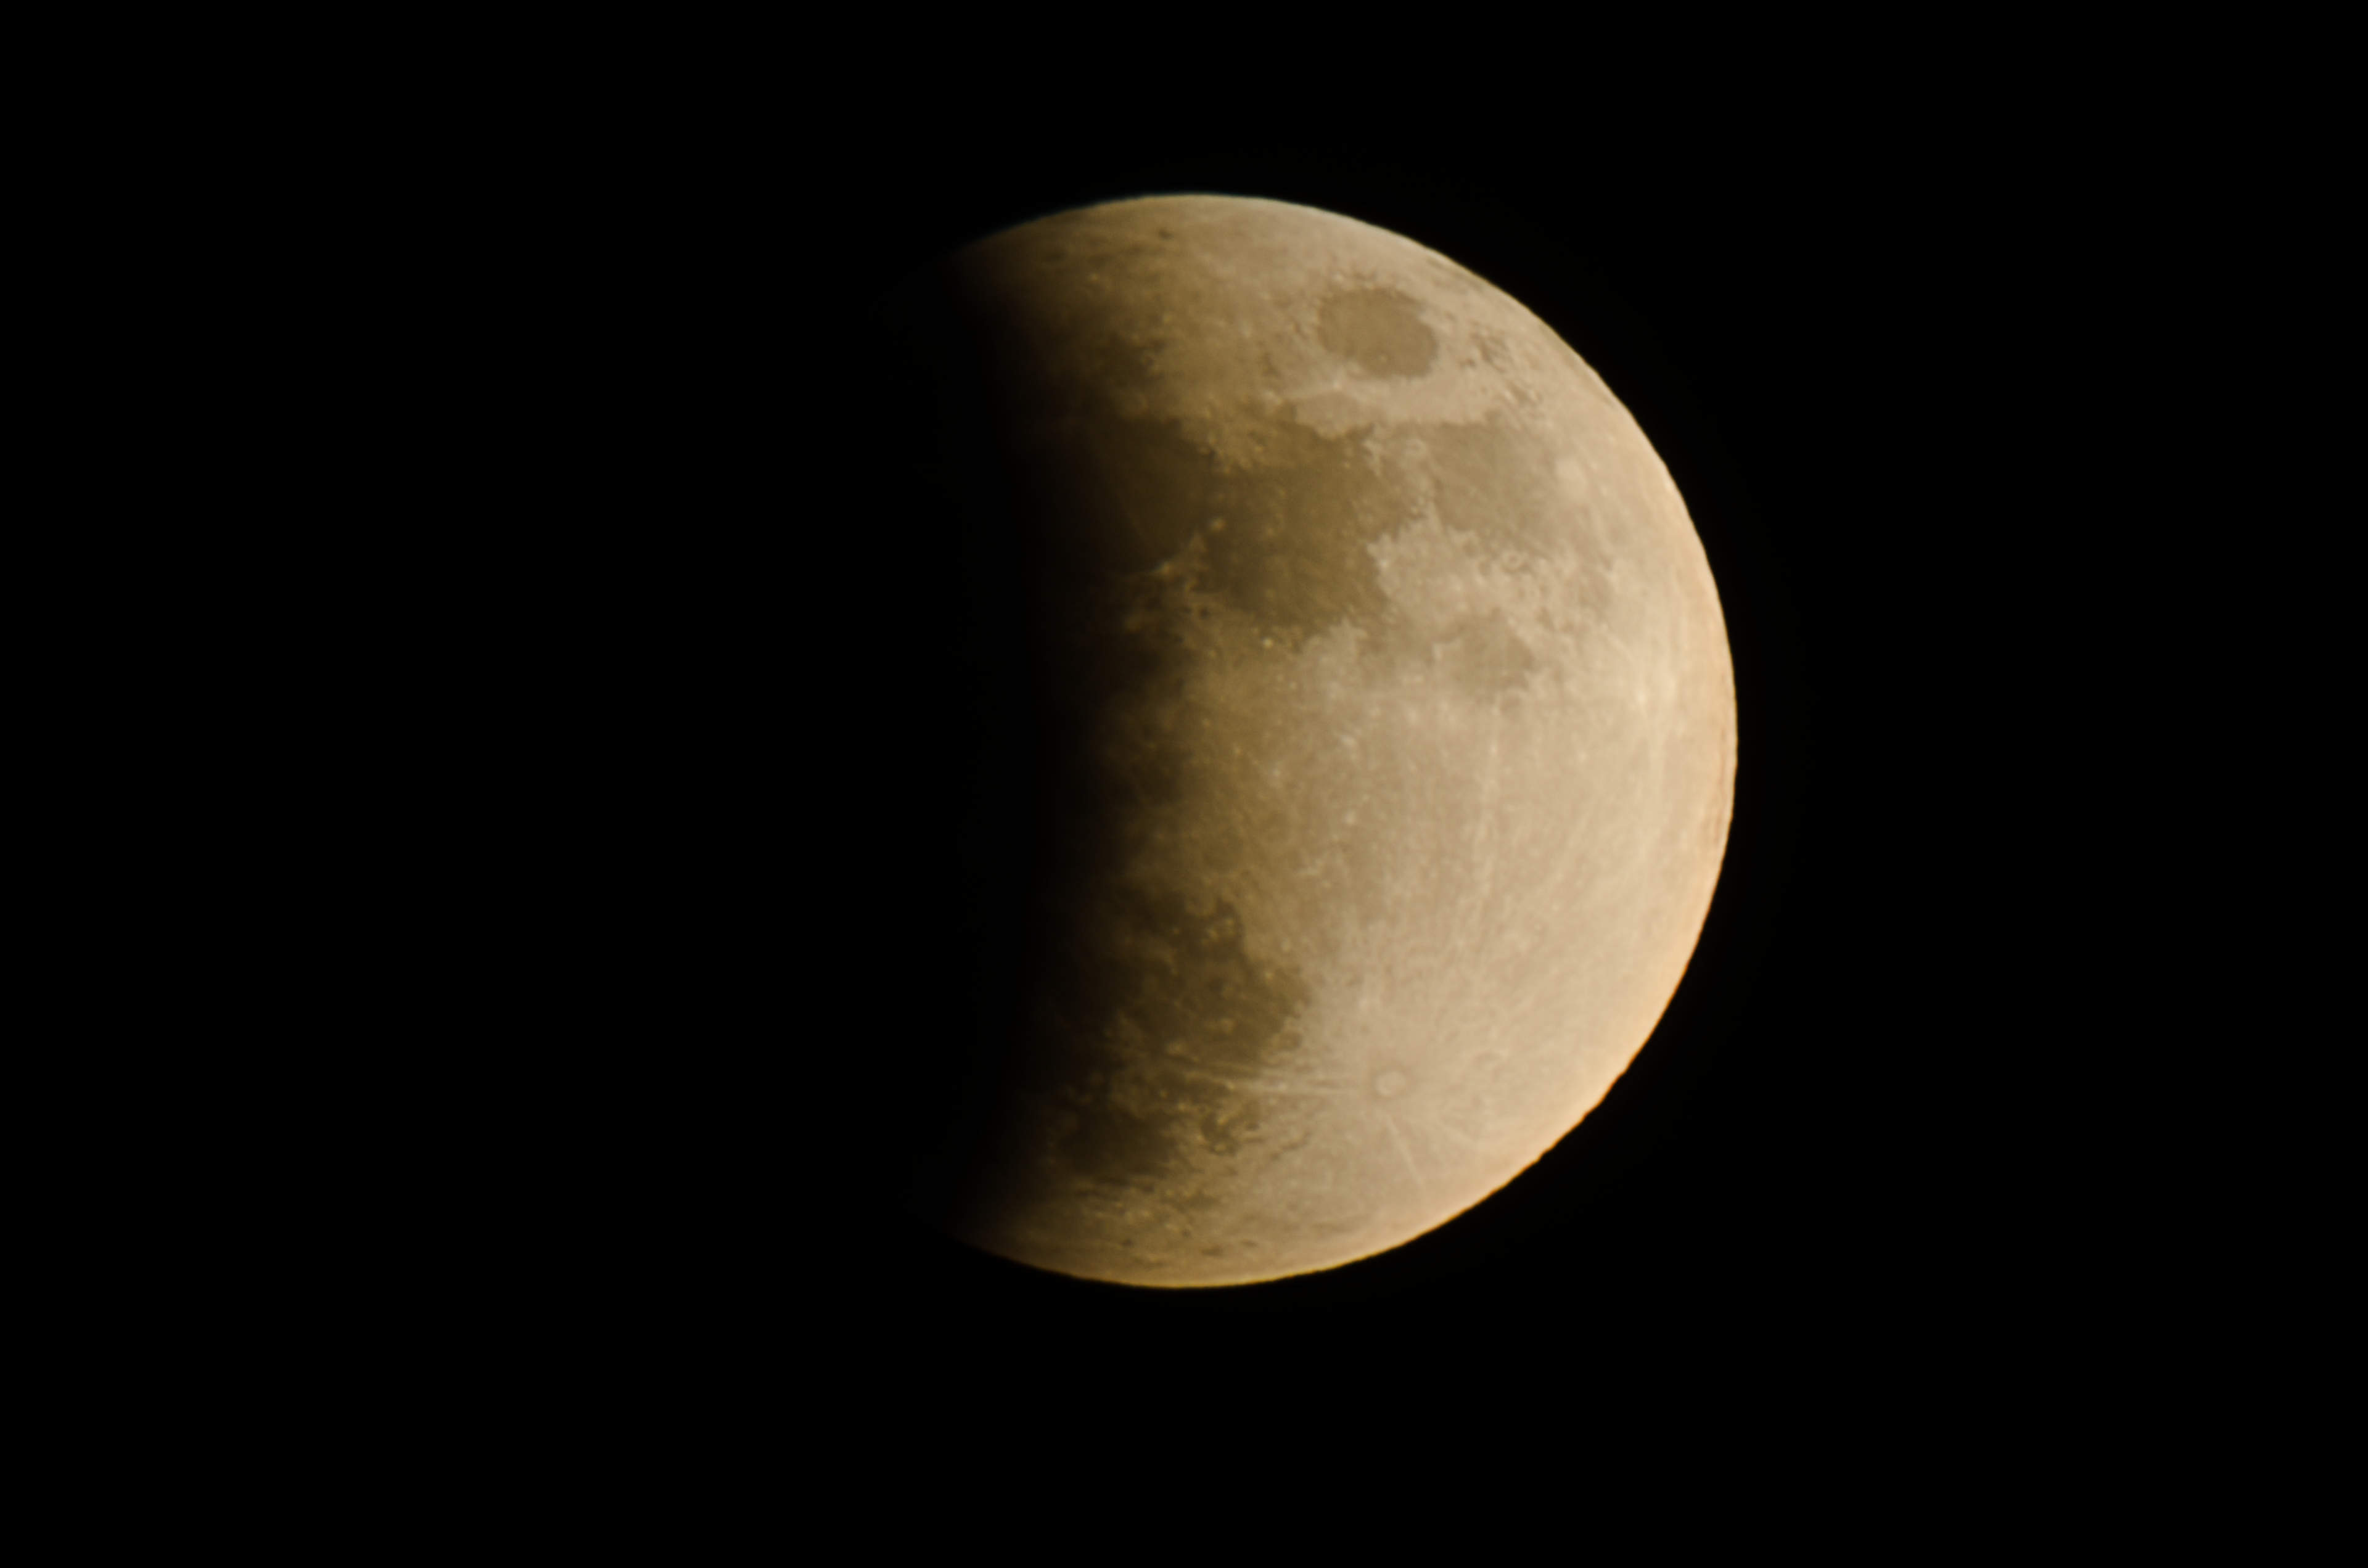 Partial lunar eclipse